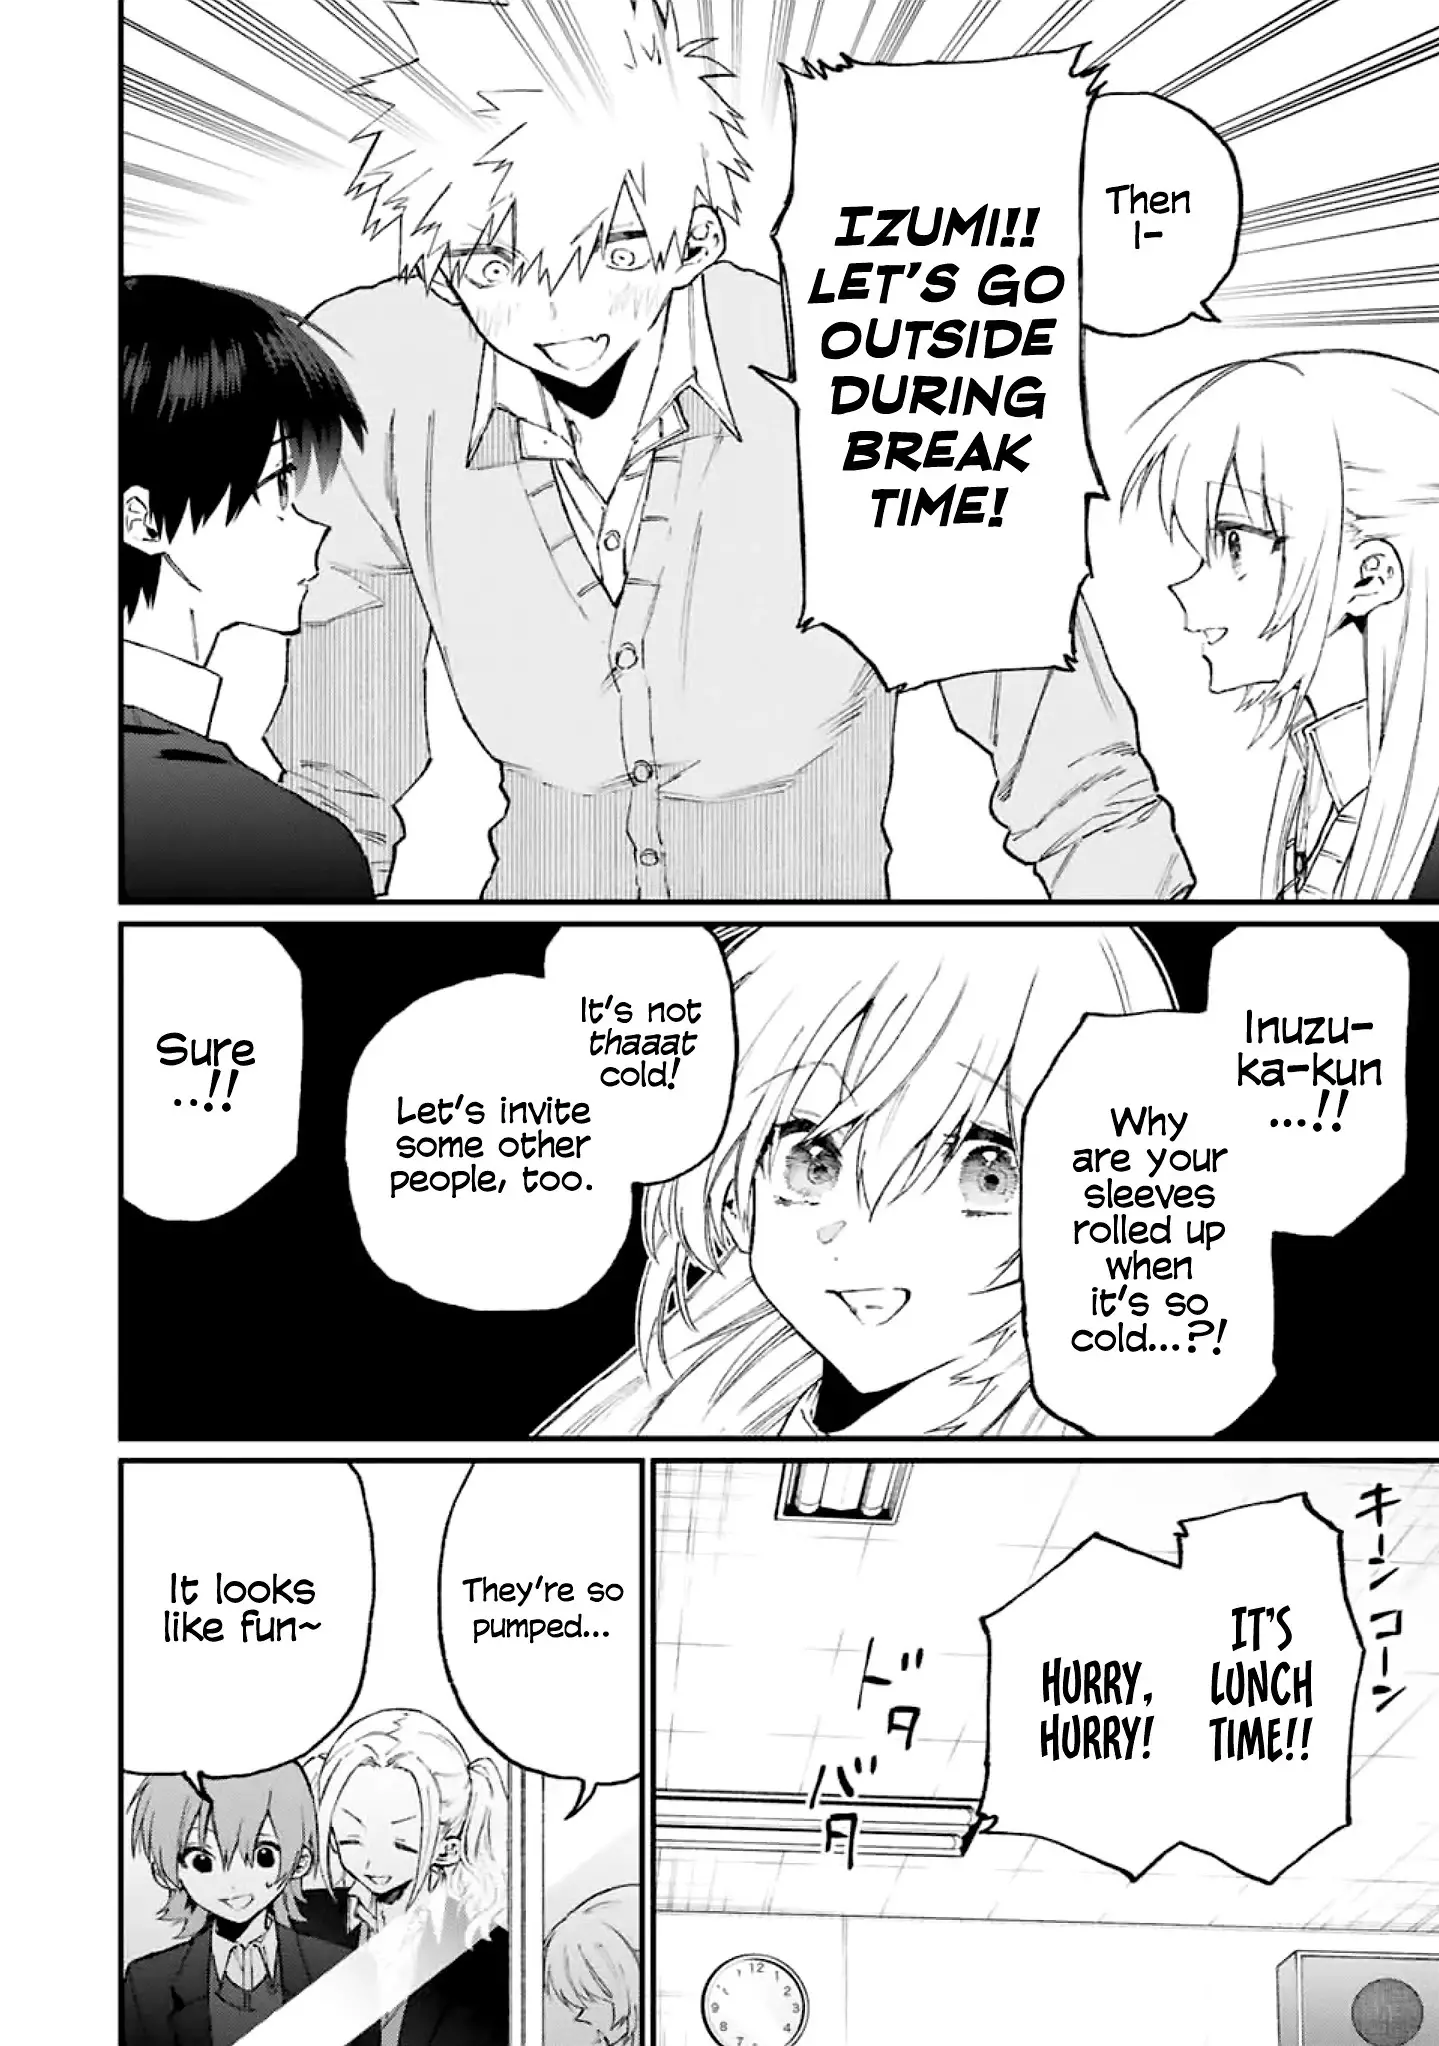 Shikimori's Not Just A Cutie - 113 page 7